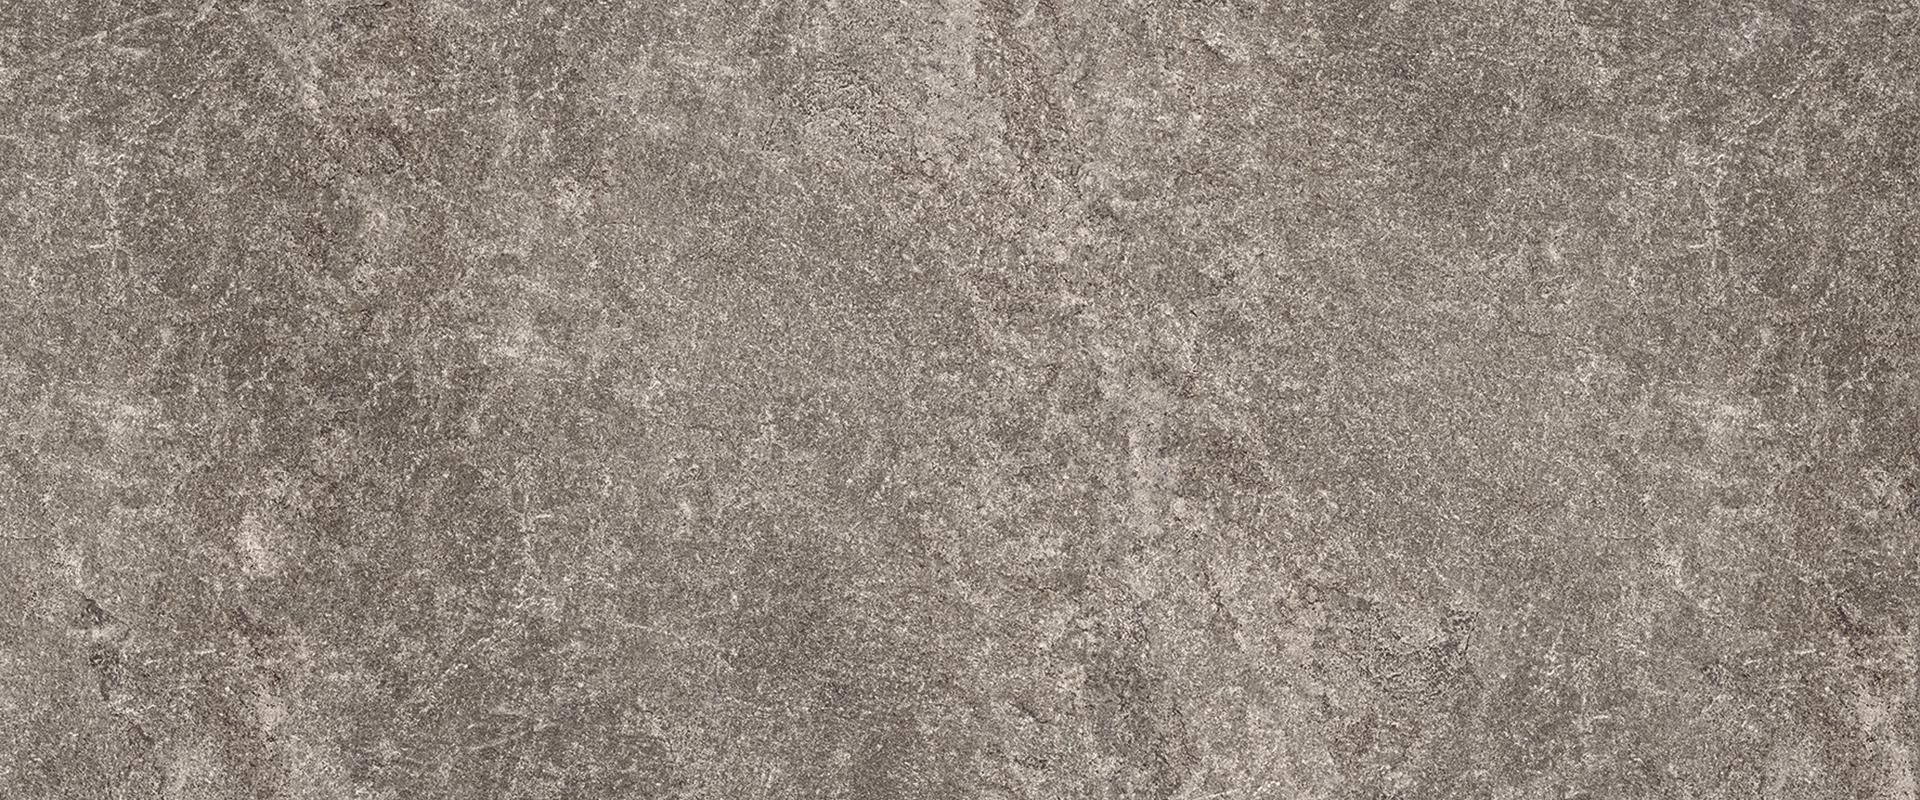 Oros Stone: Fondo Anthracite Field Tile (12"x24"x9.5-mm | tecnica)